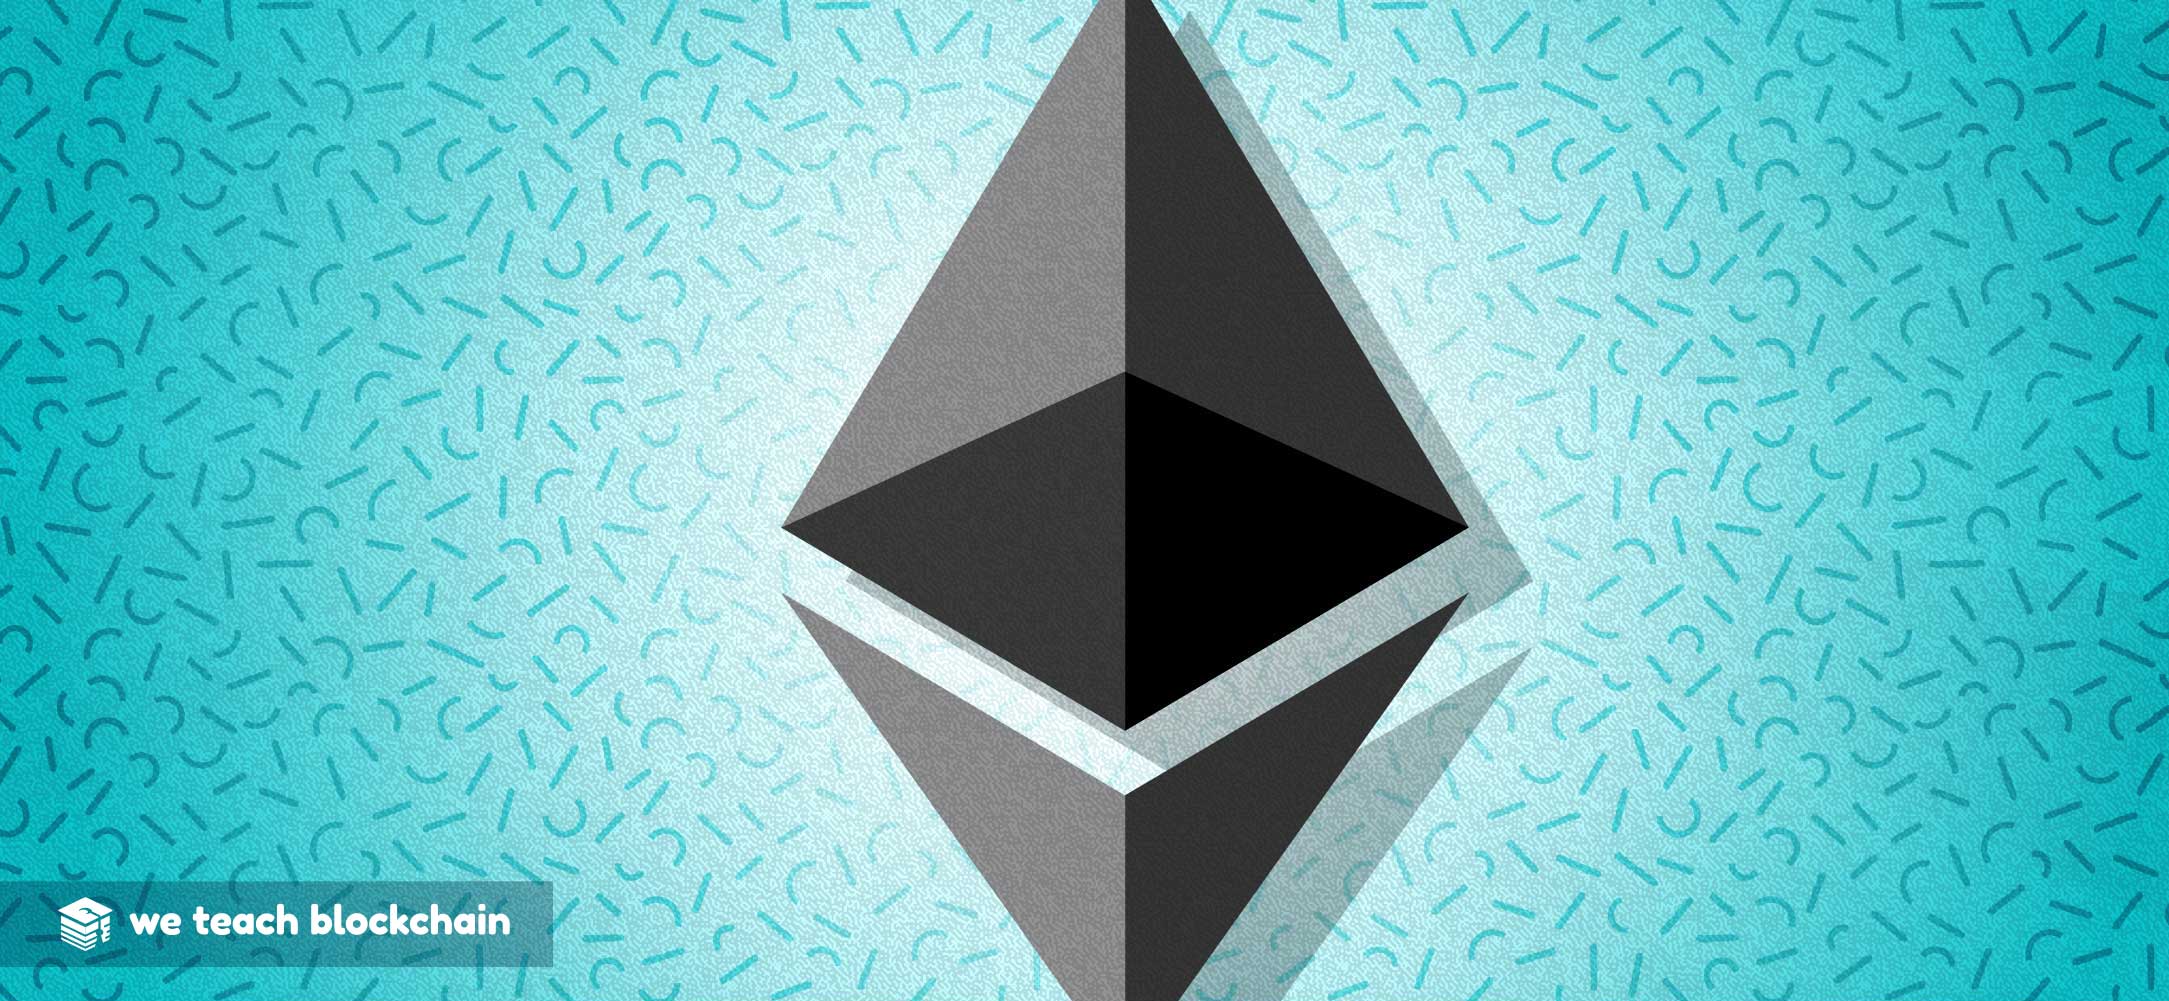 An Ethereum logo